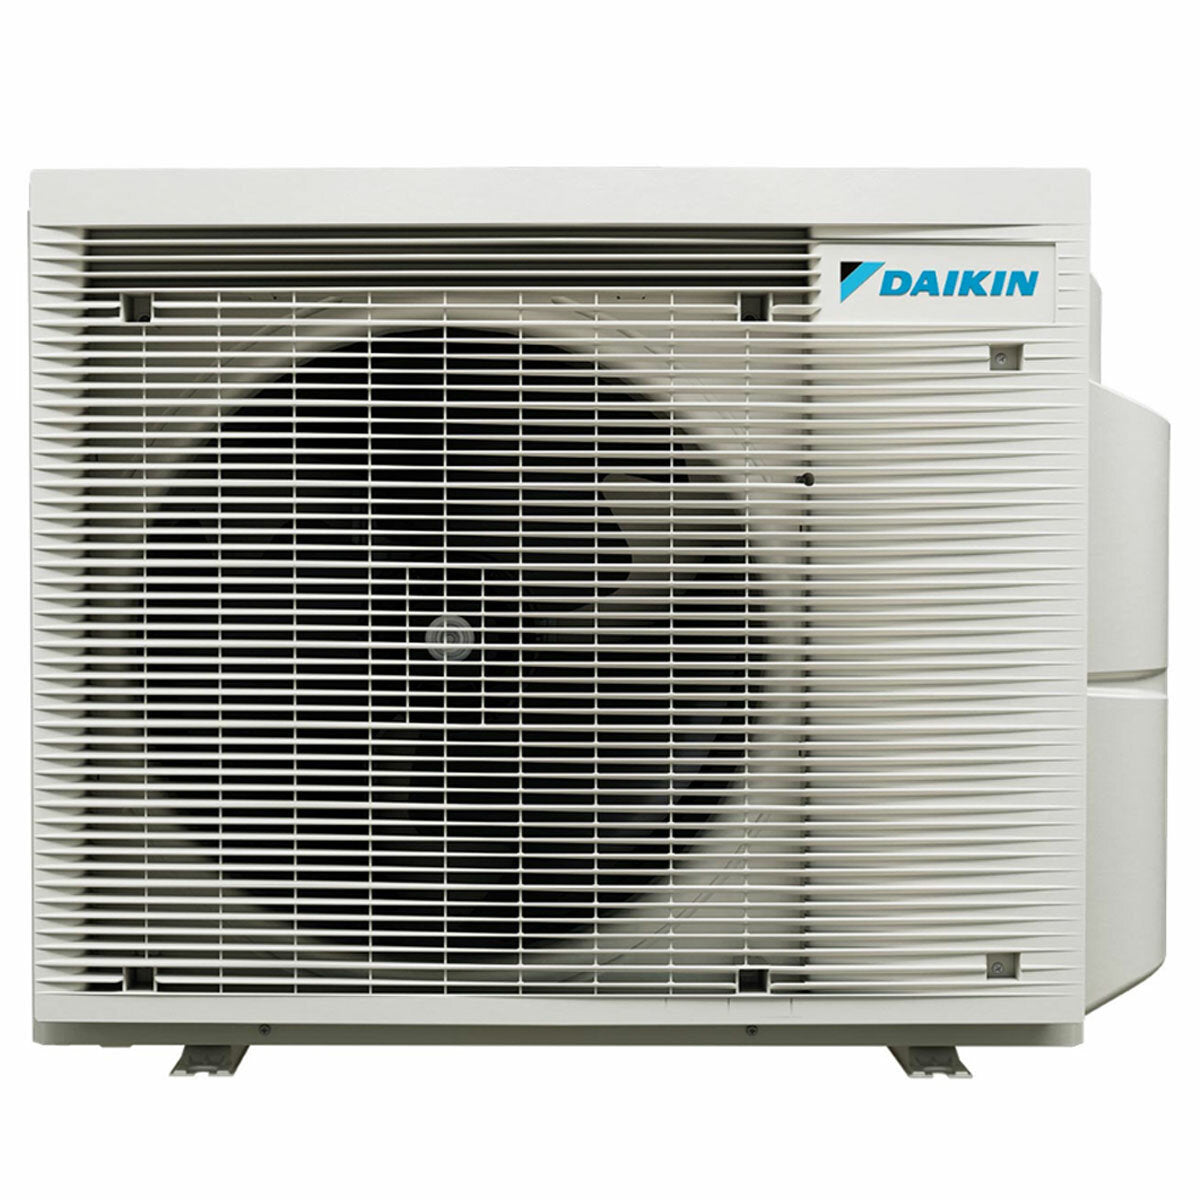 Daikin Perfera Wall Klimaanlage Quad Split 5000 + 5000 + 7000 + 18000 BTU Wechselrichter A ++ WLAN Außengerät 6,8 kW